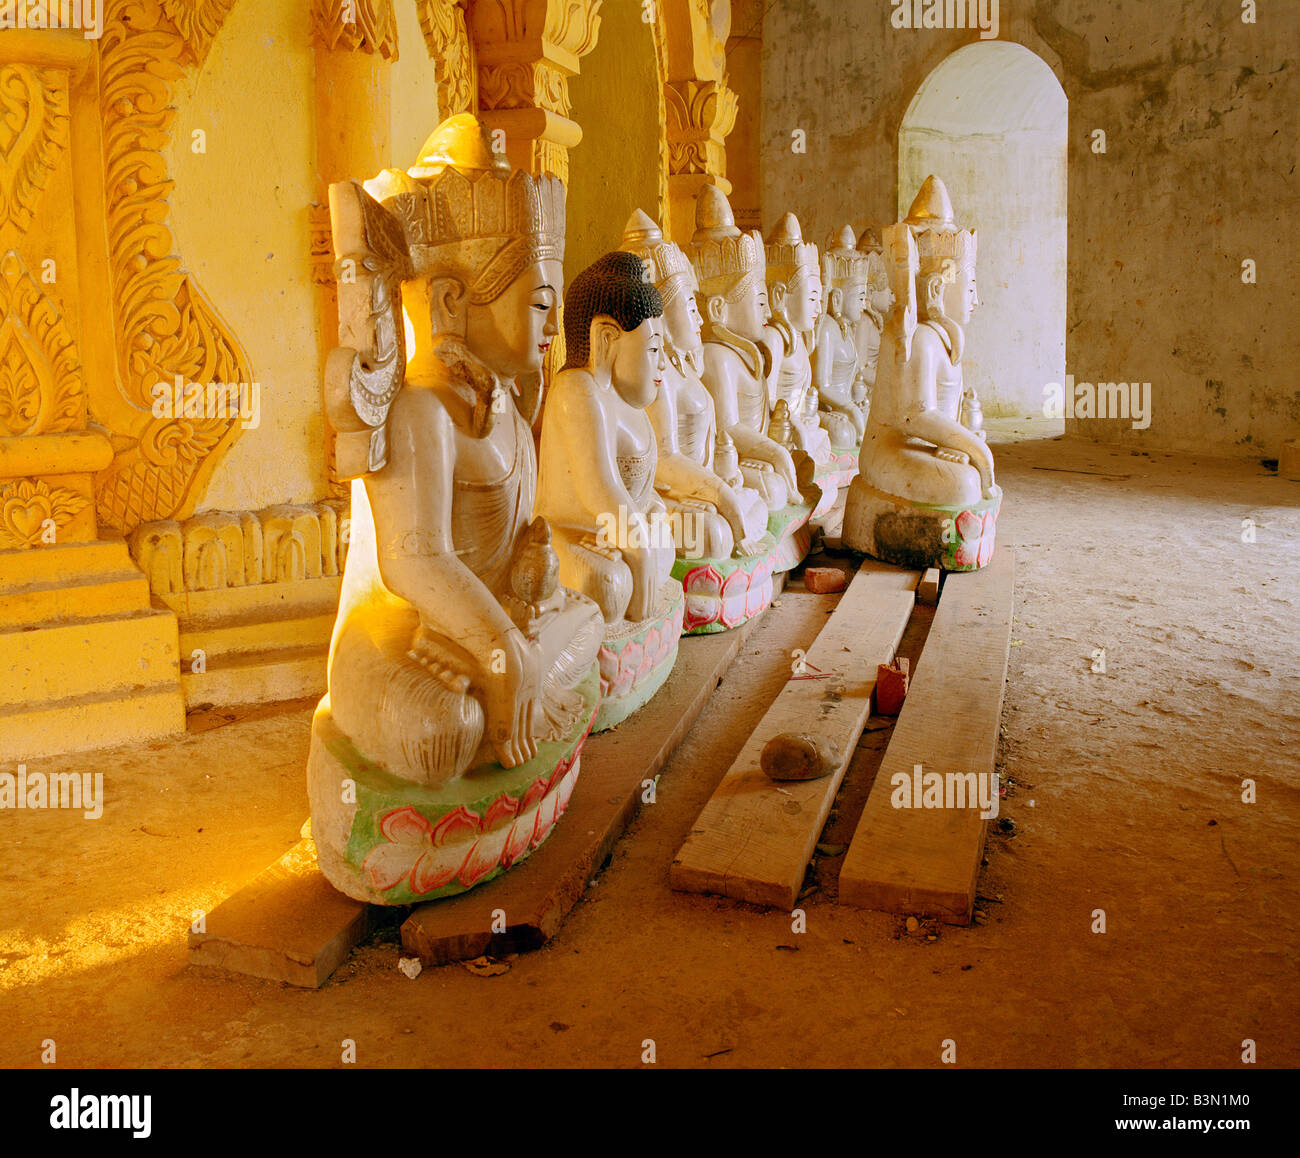 8 estatuas de Buda en chino al estilo indio se almacenan en un templo durante el período de la restauración Foto de stock